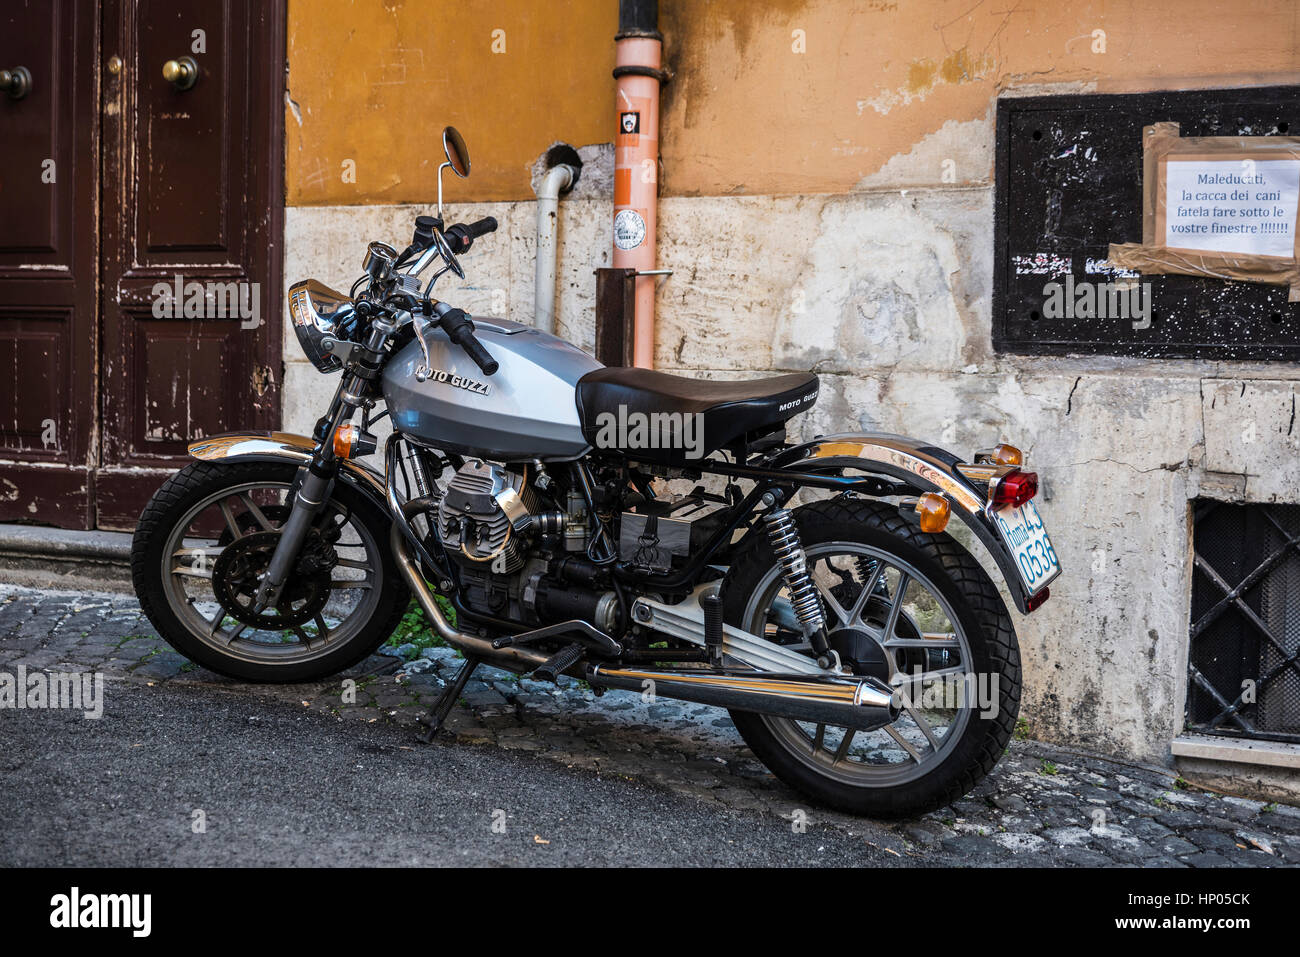 Rome, Italie - 30 Décembre, 2016 Moto Guzzi : stationné dans le centre historique de Rome avec une affiche de plainte pour l'excrément de chien Banque D'Images